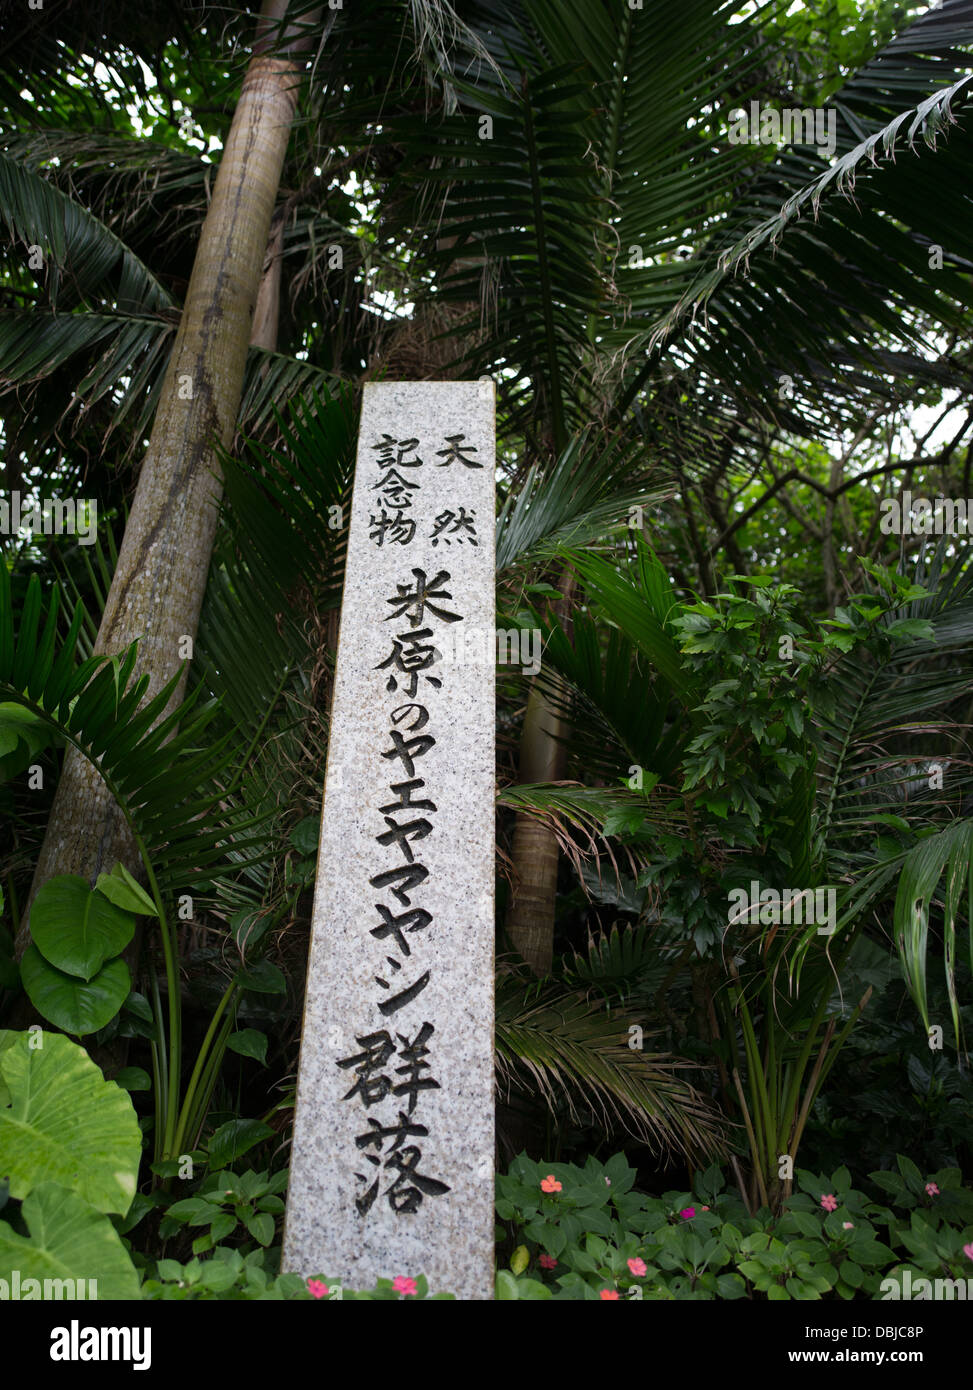 Yonehara Palm Grove, la isla de Ishigaki, Okinawa Foto de stock